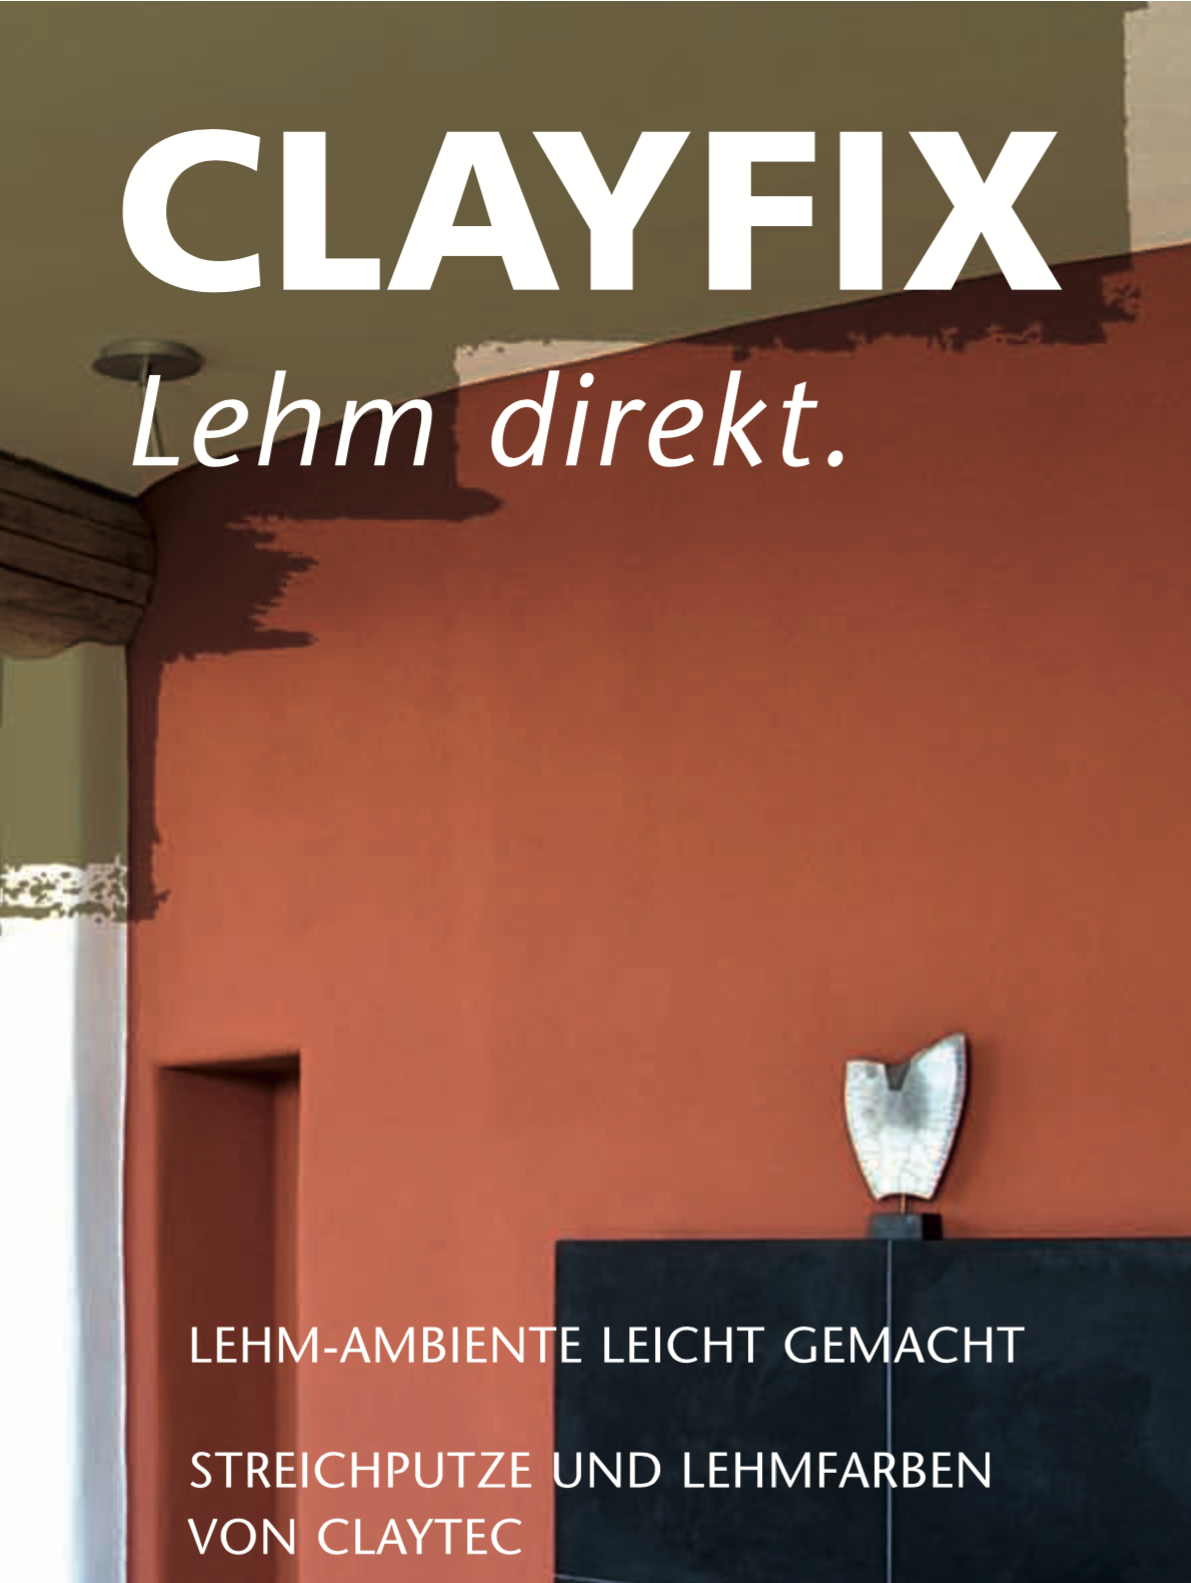 FL_Clayfix_Anstrich-Flyer